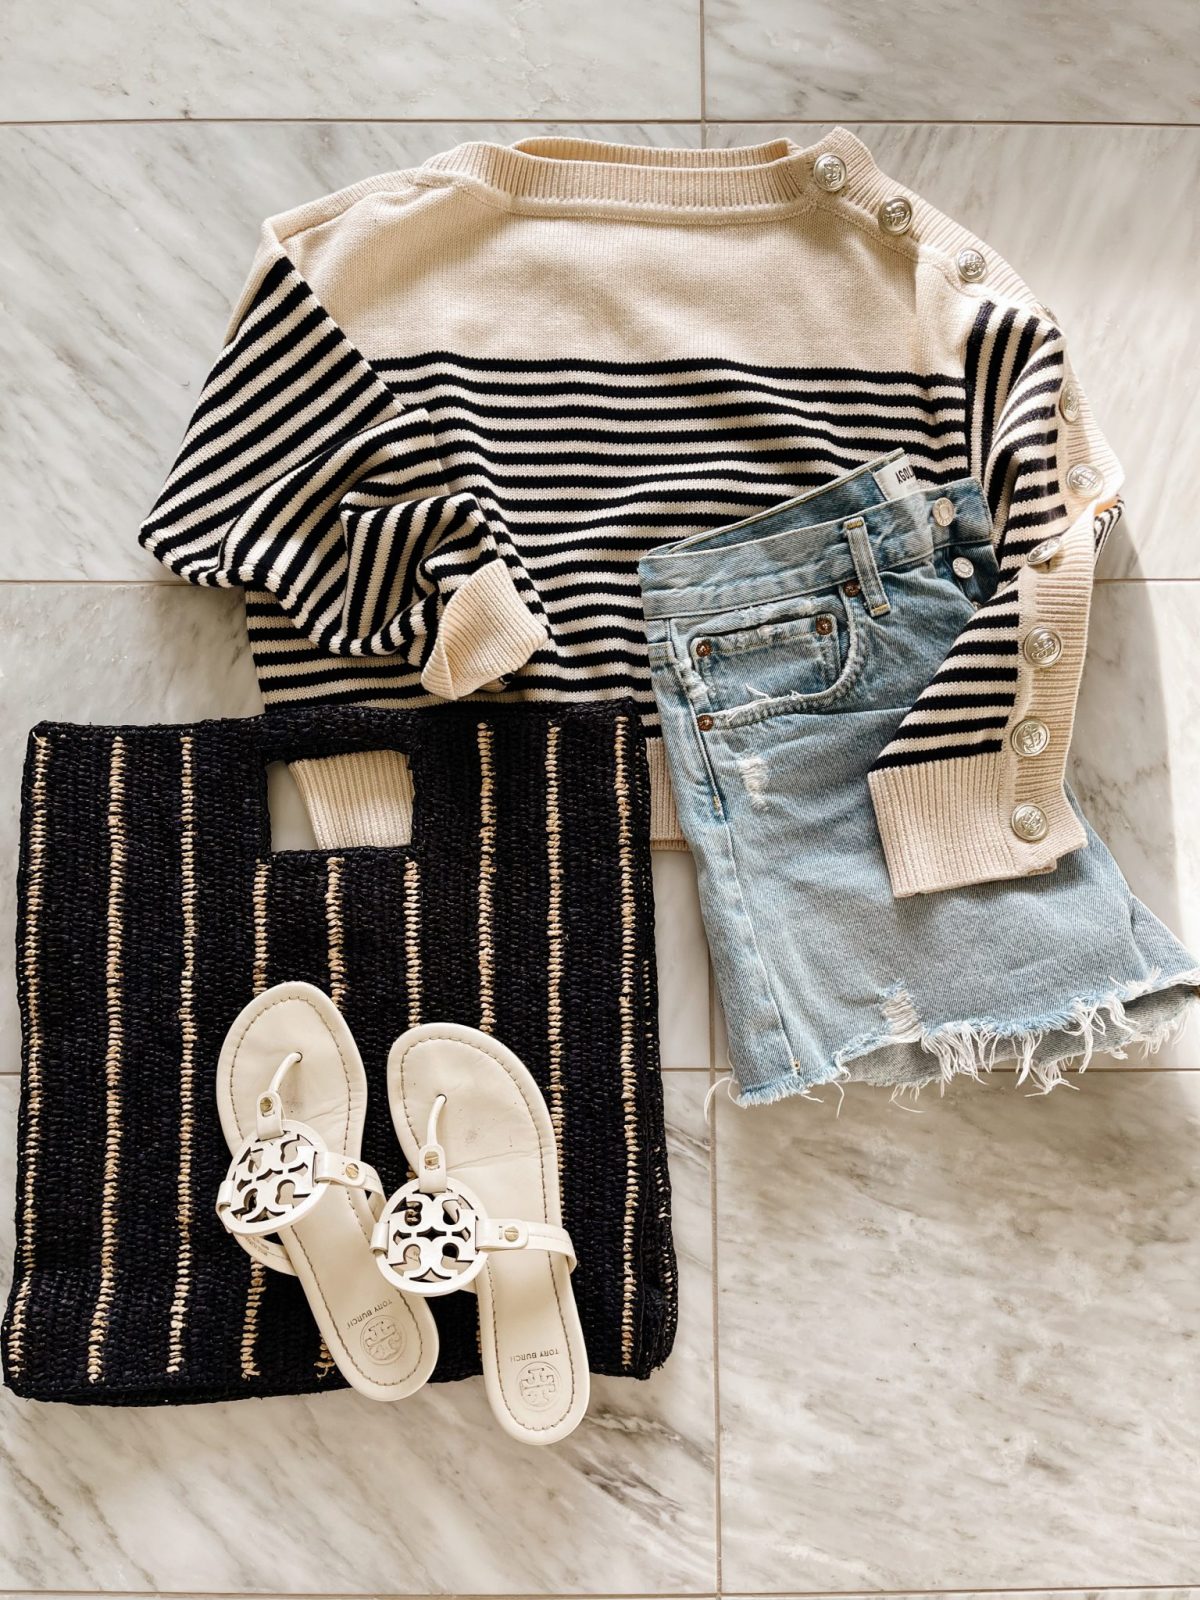 Striped sweater, denim cut offs, striped bag, and sandals